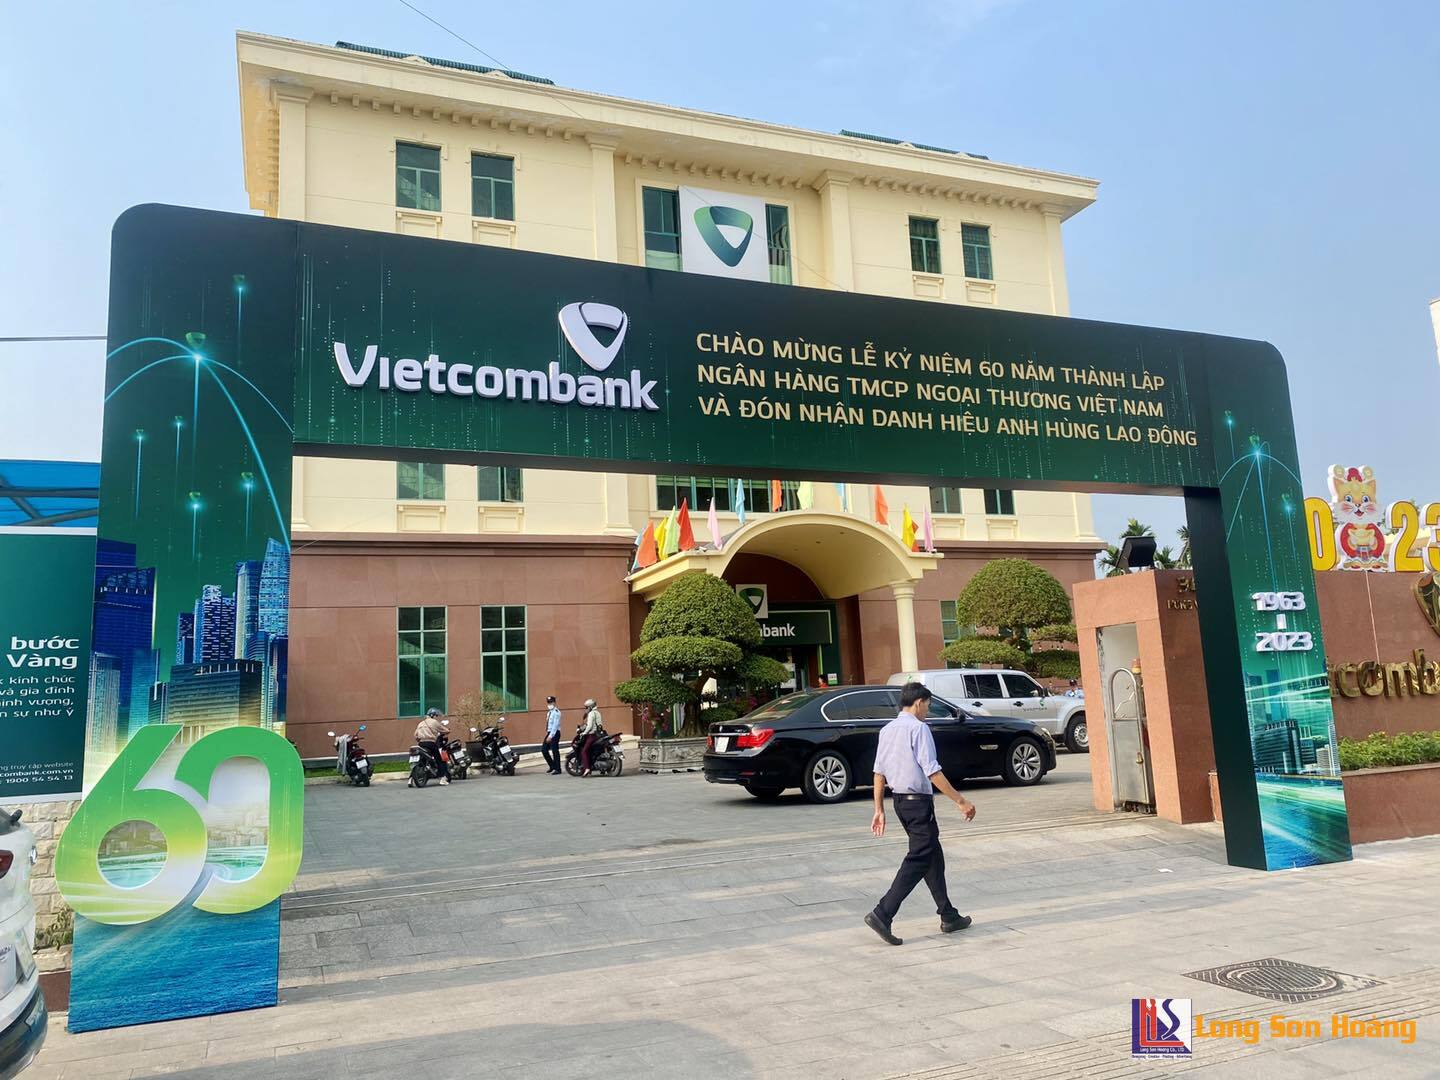 Cổng chào chào mừng lễ kỷ niệm 60 năm thành lập Ngân hàng Vietcombank